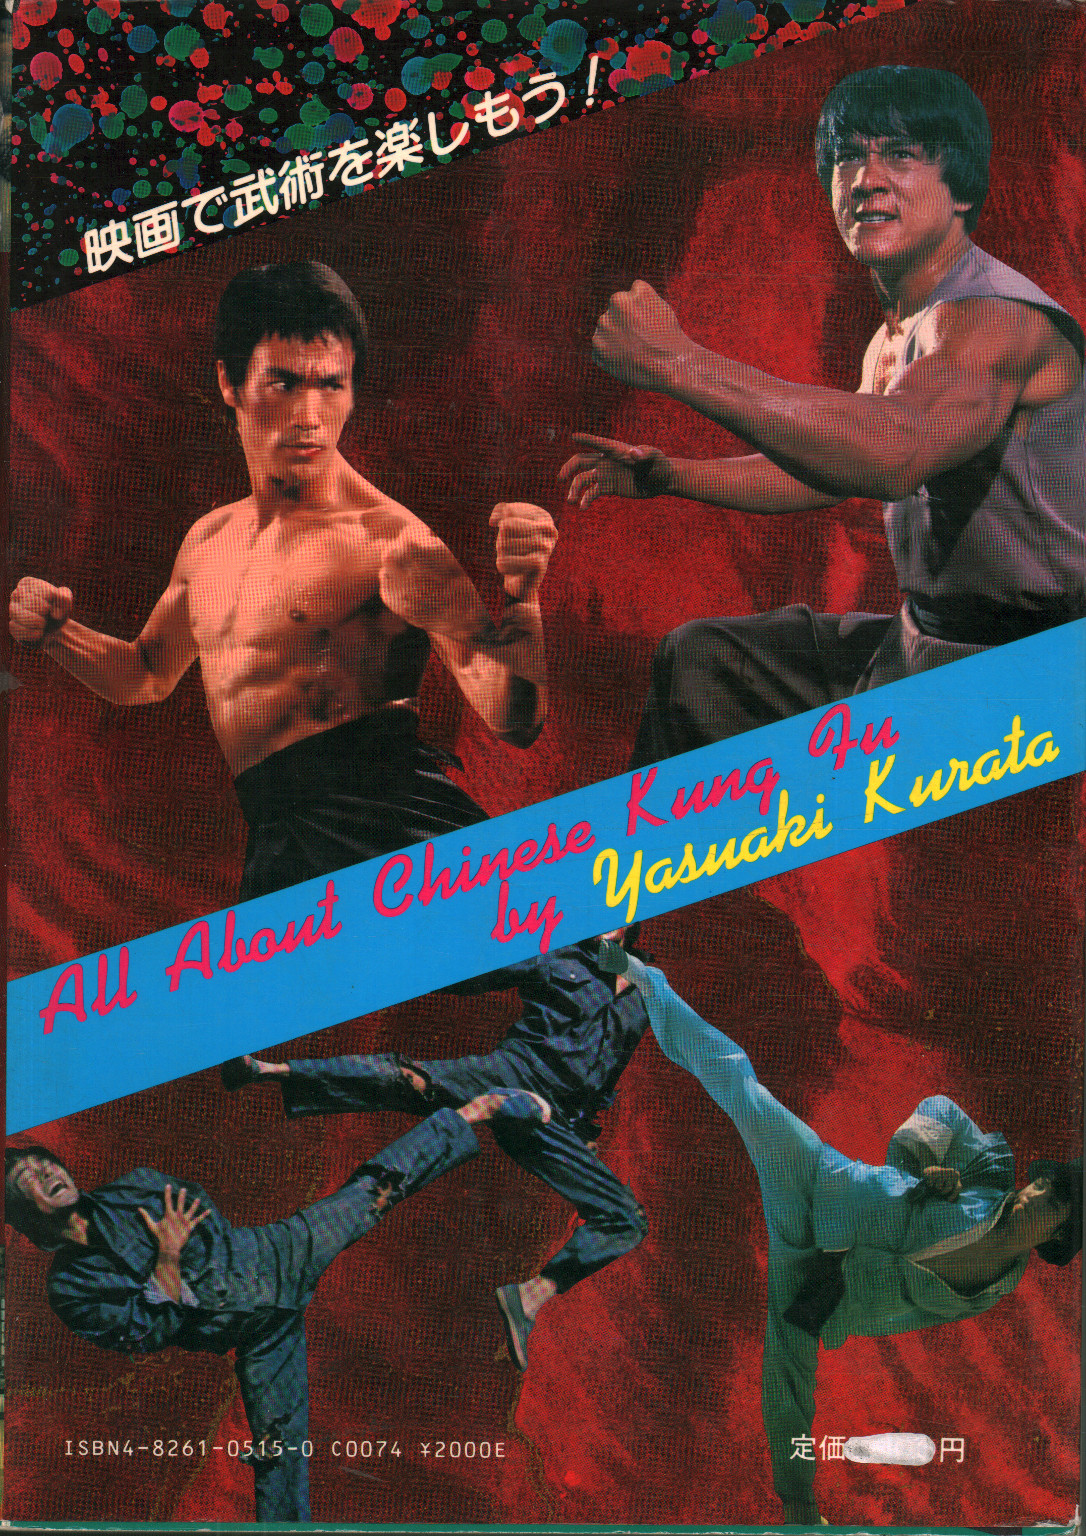 All about Chinese Kung Fu, Yasuaki Kurata